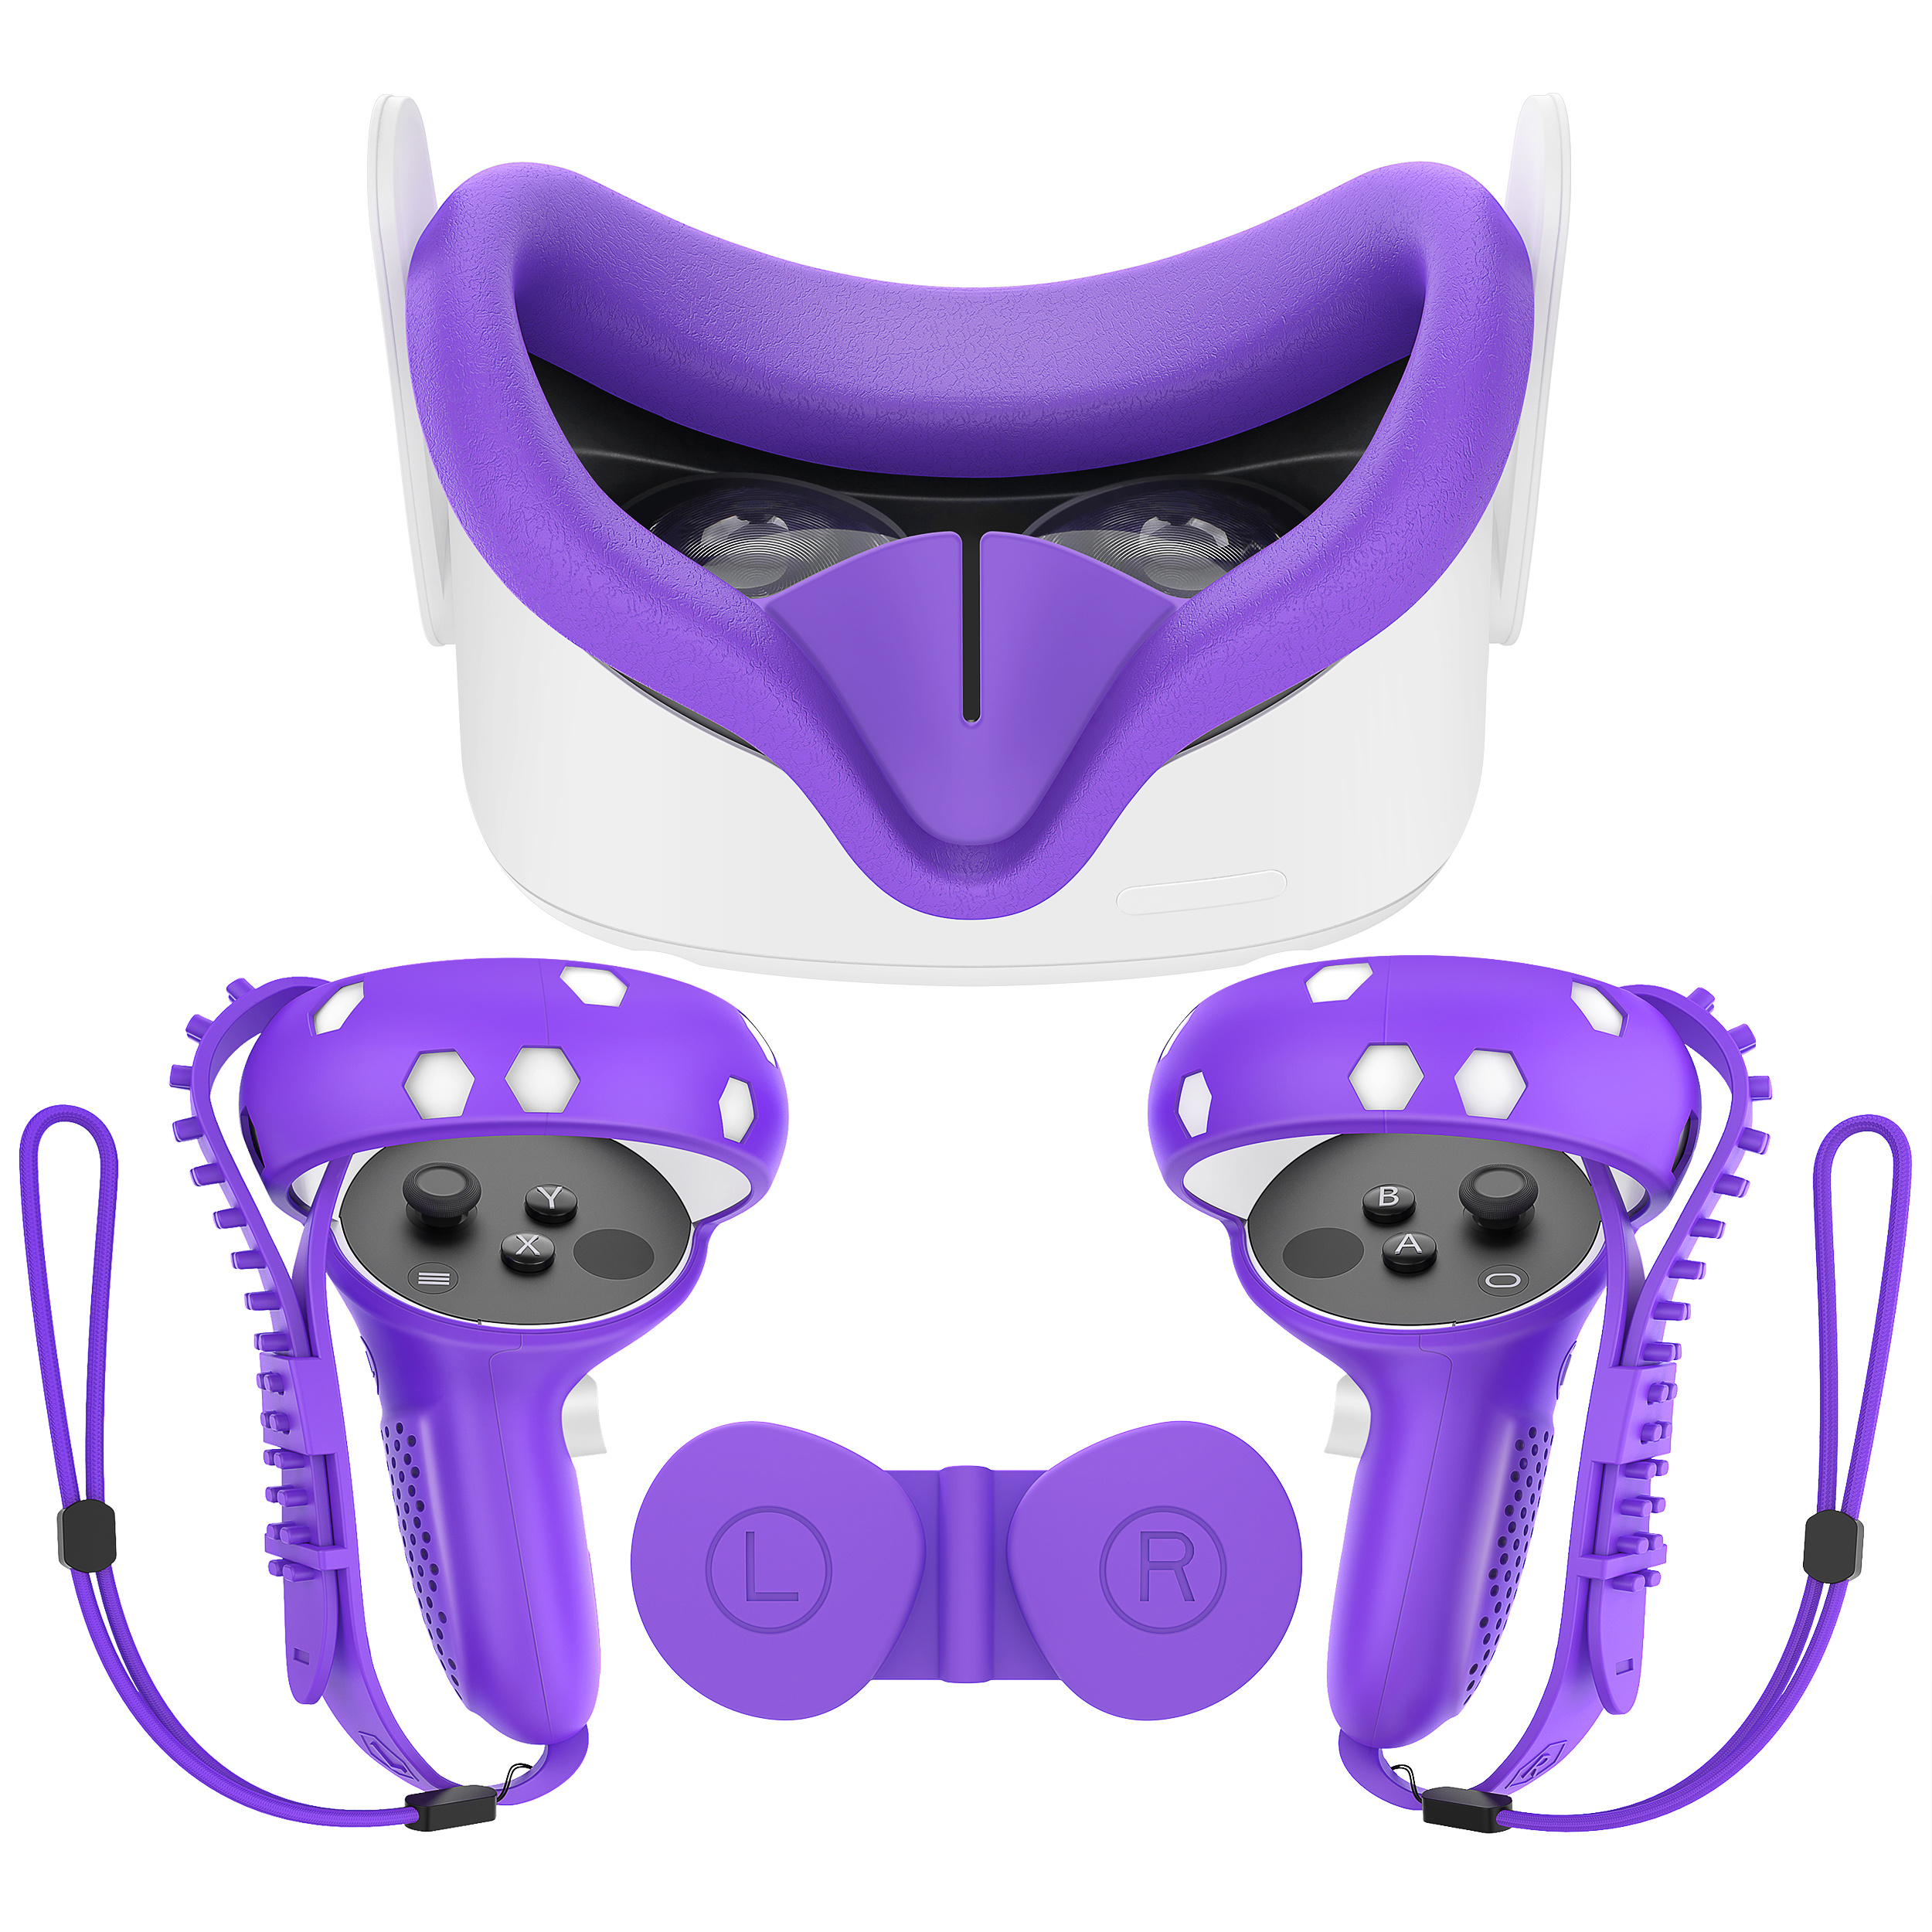 ilicone VR - Funda protectora para gafas Oculus/Meta Quest 2, resistente al  sudor, repuesto para accesorios Q2 VR (azul mixto) brillar Electrónica